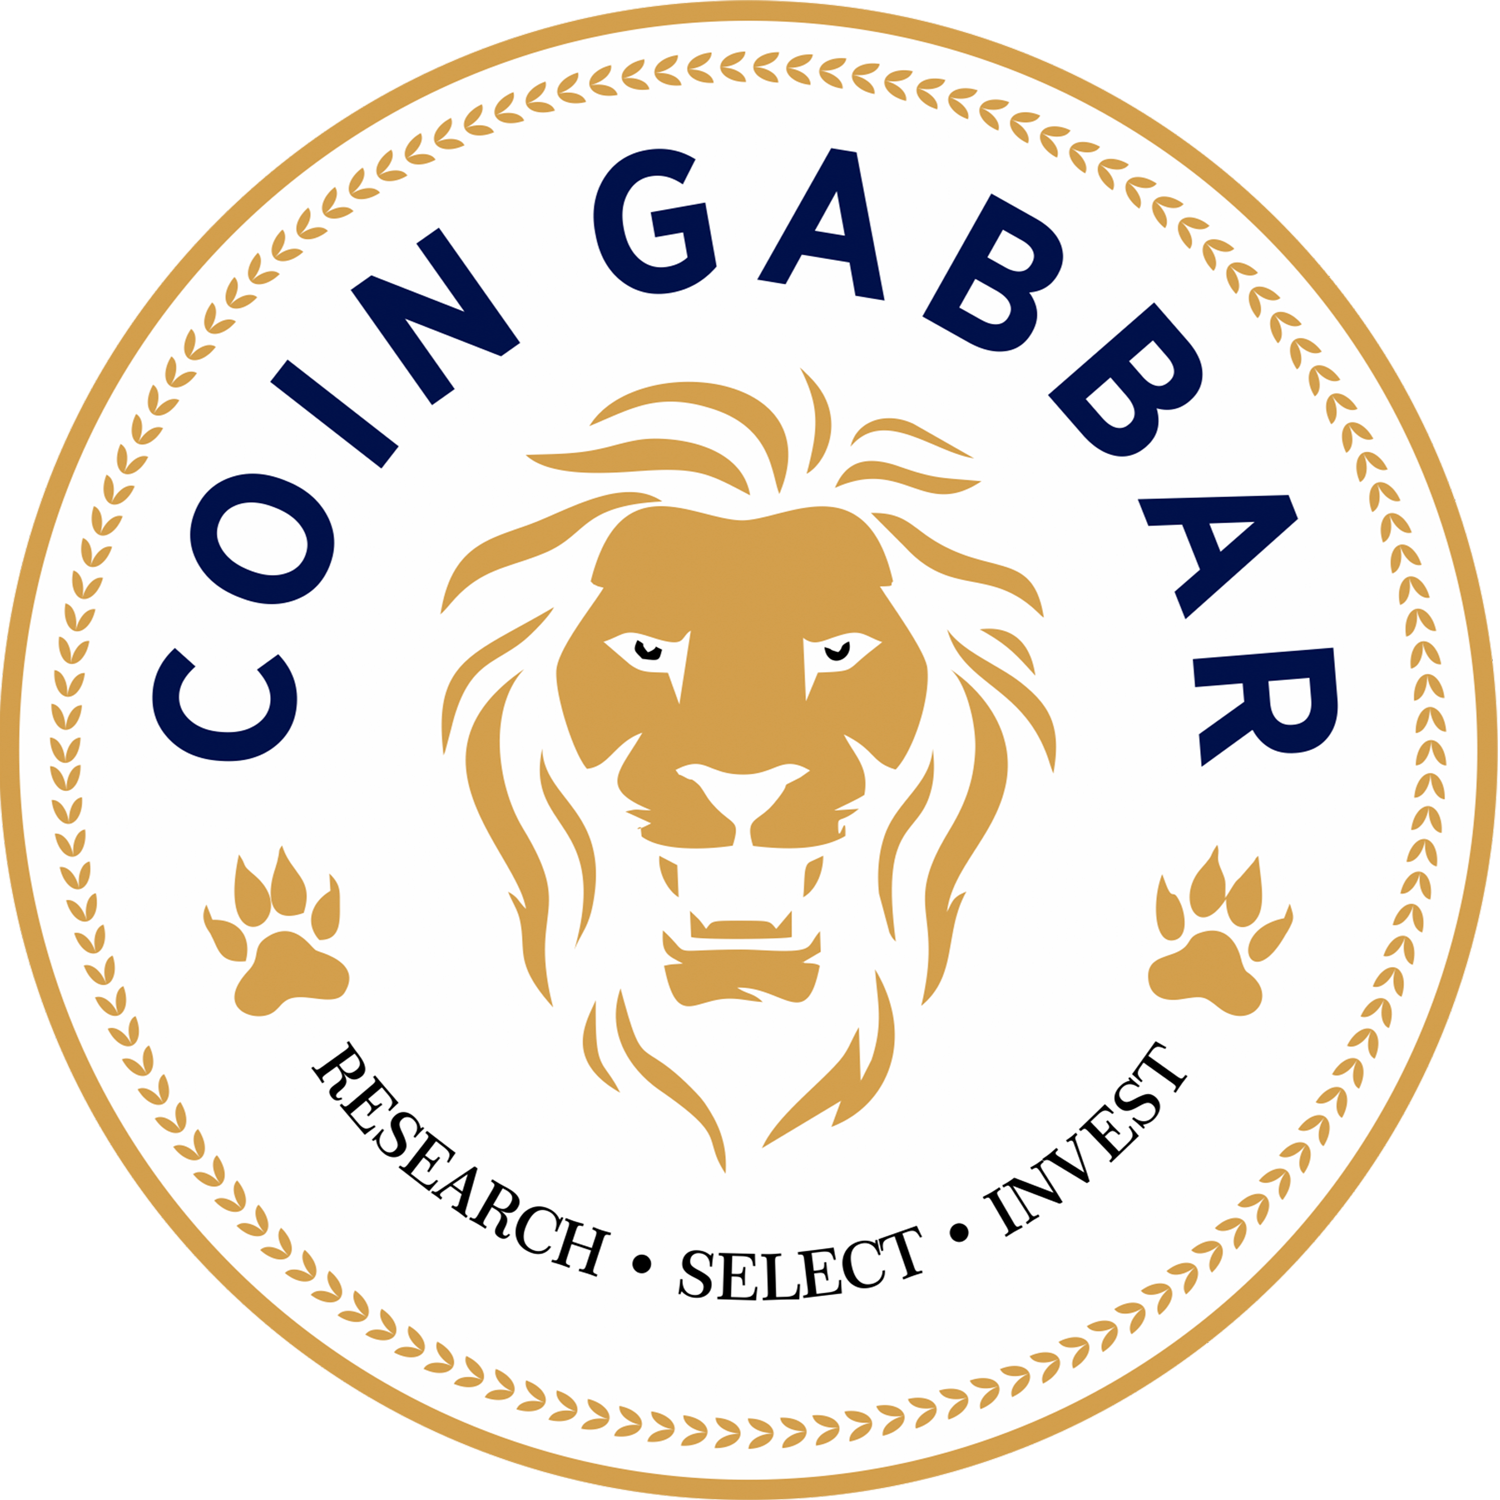 Update more than 52 gabbar logo latest